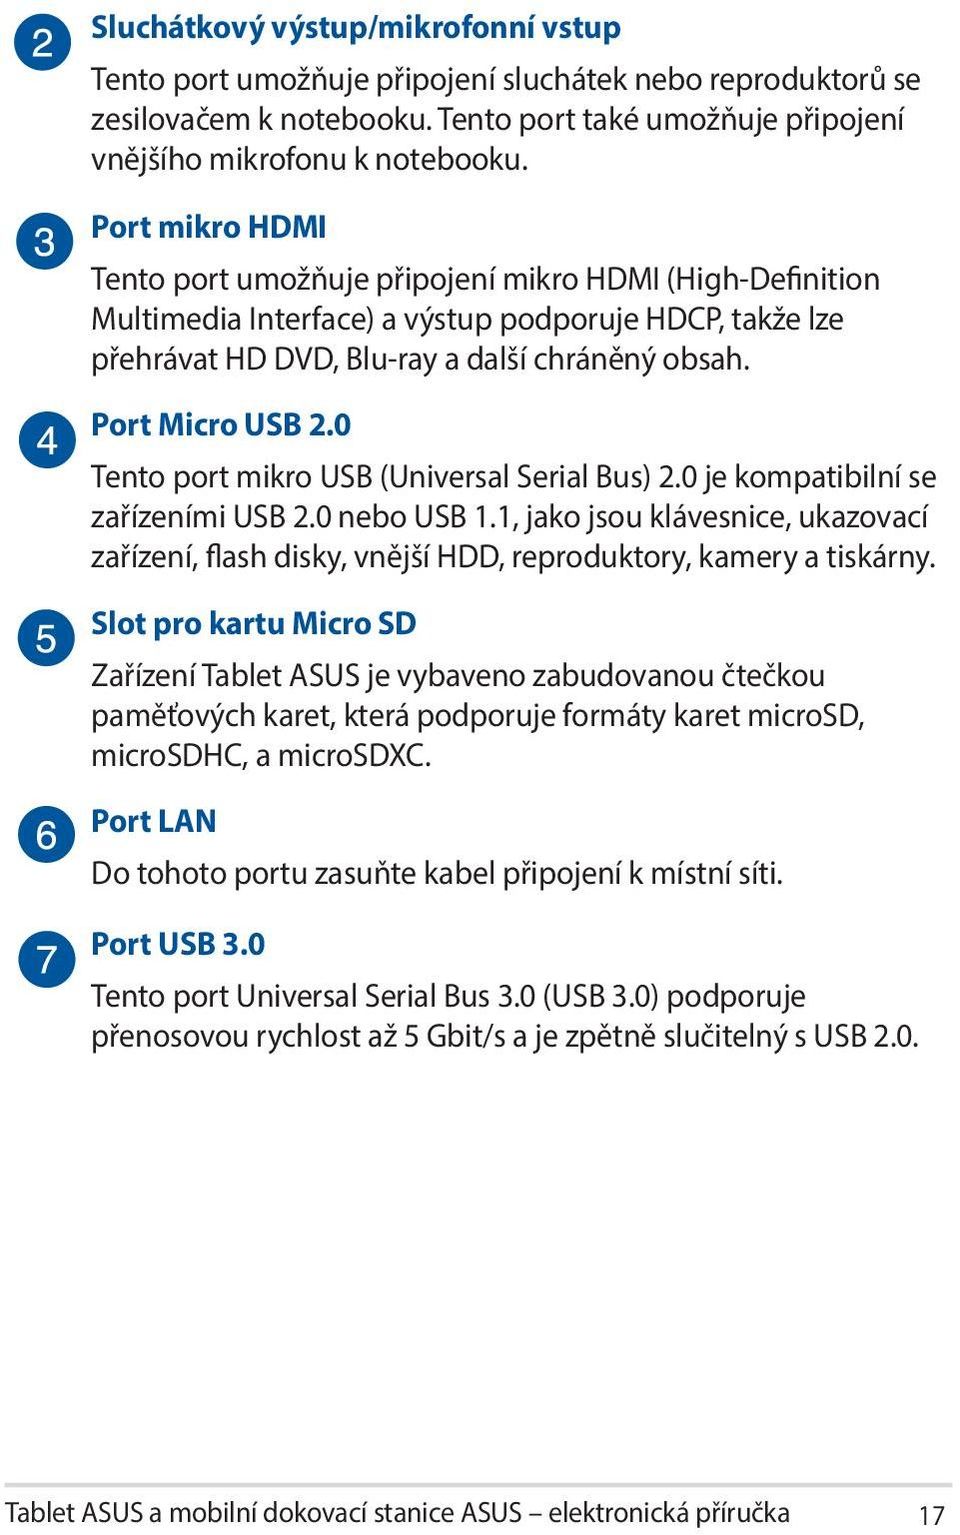 0 Tento port mikro USB (Universal Serial Bus) 2.0 je kompatibilní se zařízeními USB 2.0 nebo USB 1.